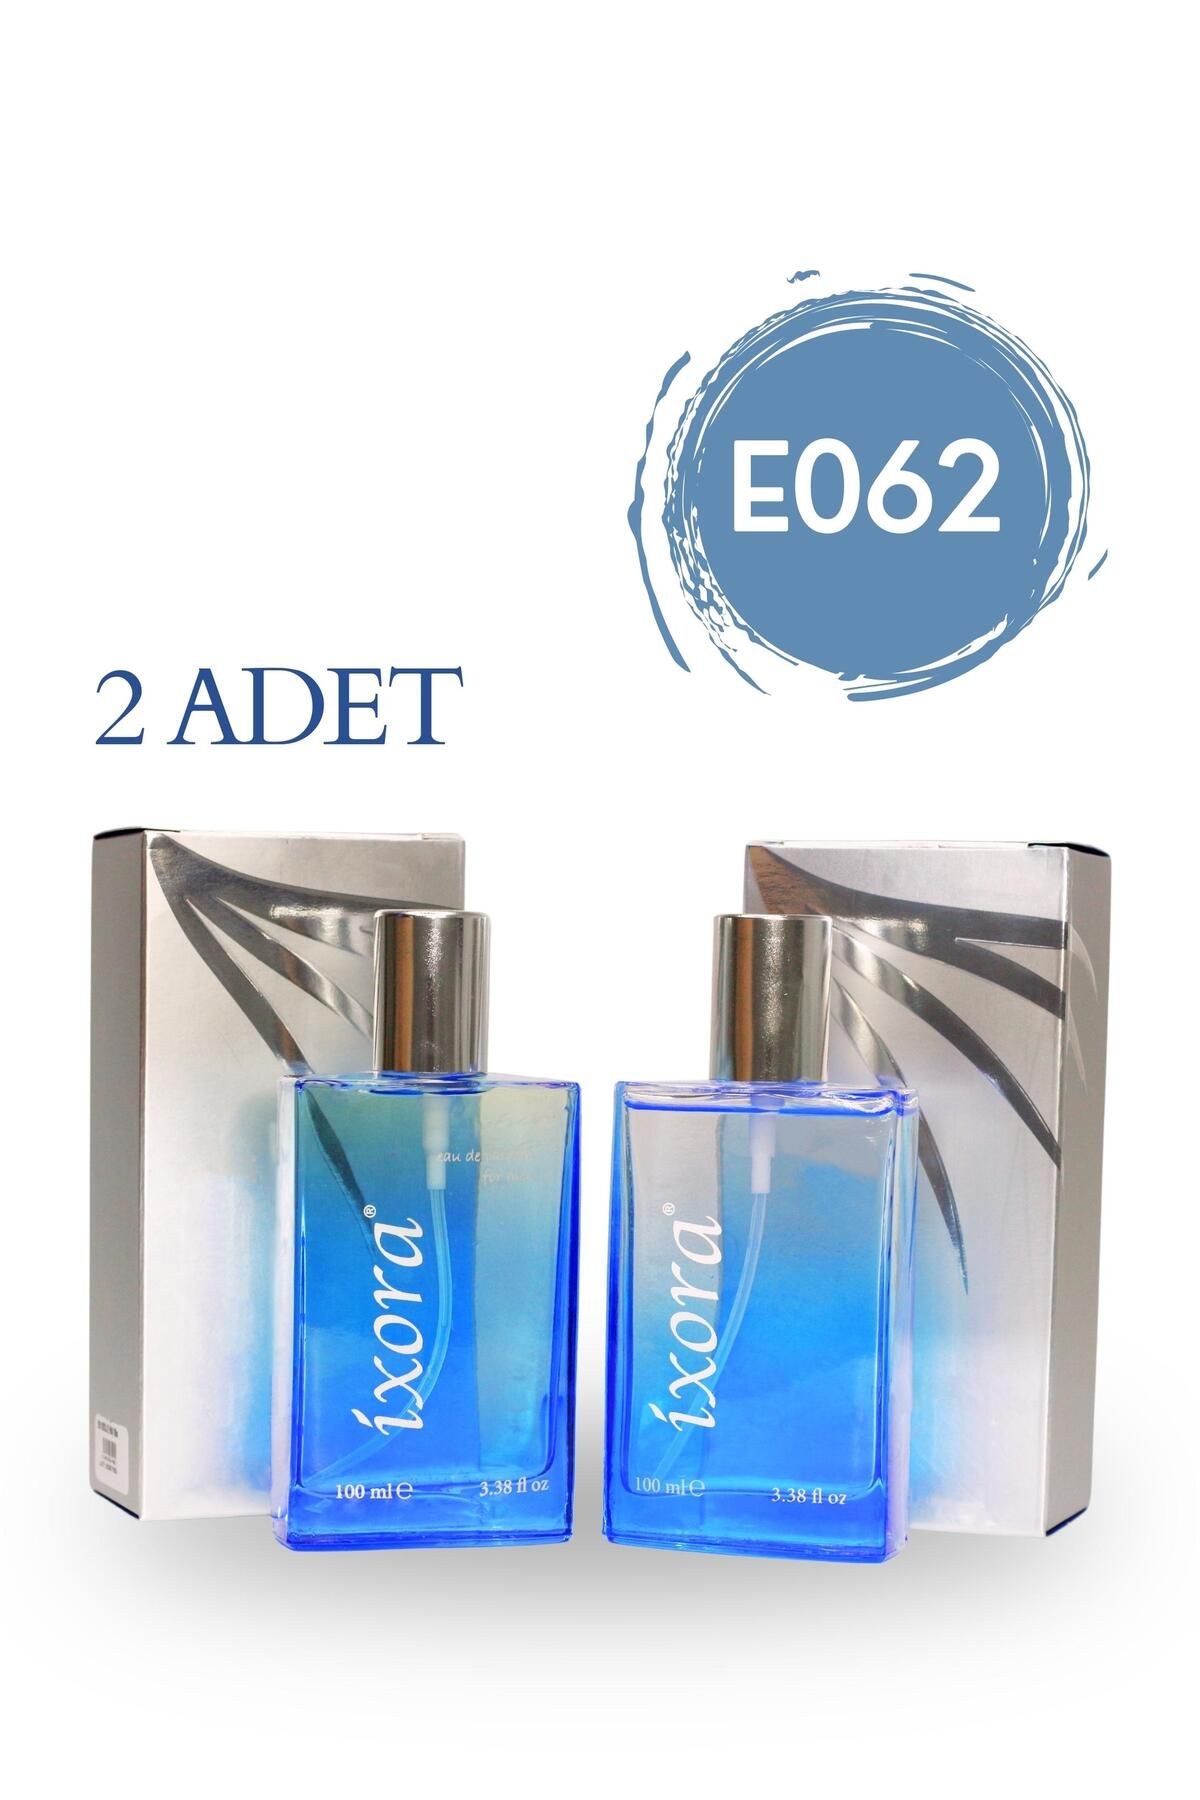 Ixora E062x2 (2 adet) Goa Erkek Parfüm 100 ml Edp